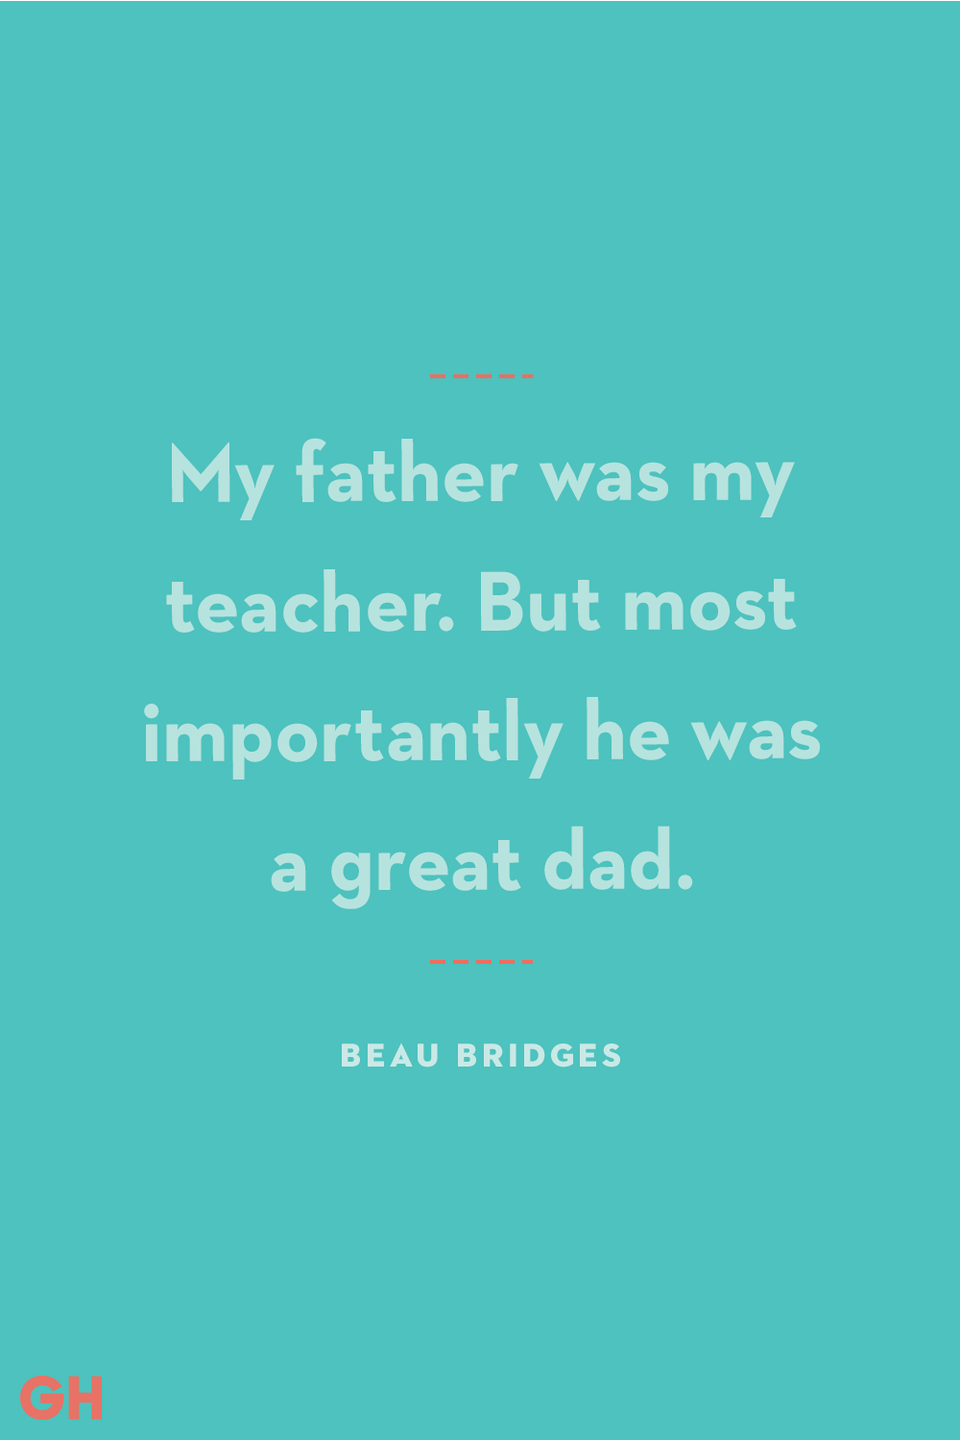 23) Beau Bridges